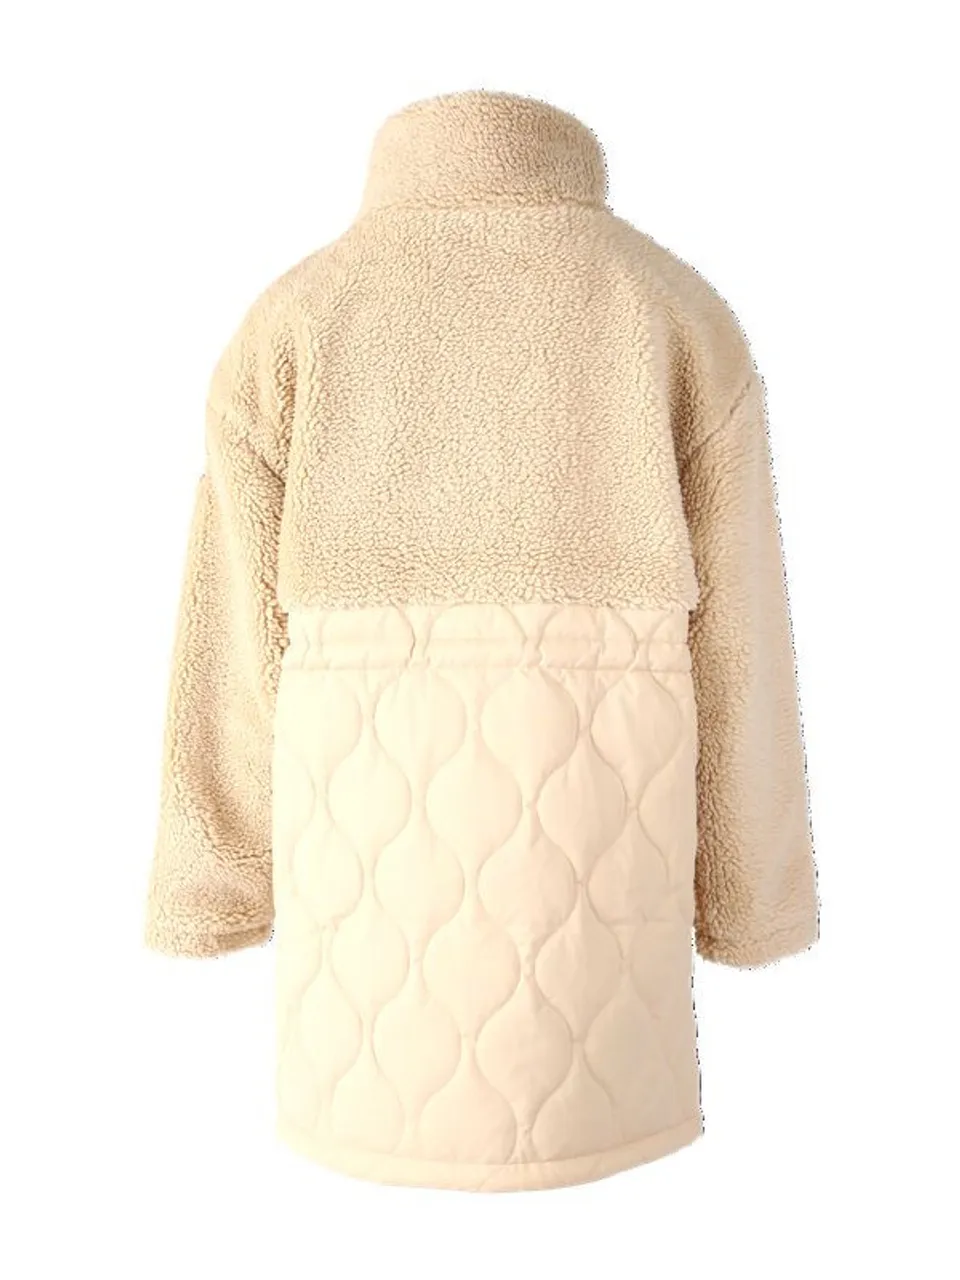 Brunotti cecile women fleece jacket -